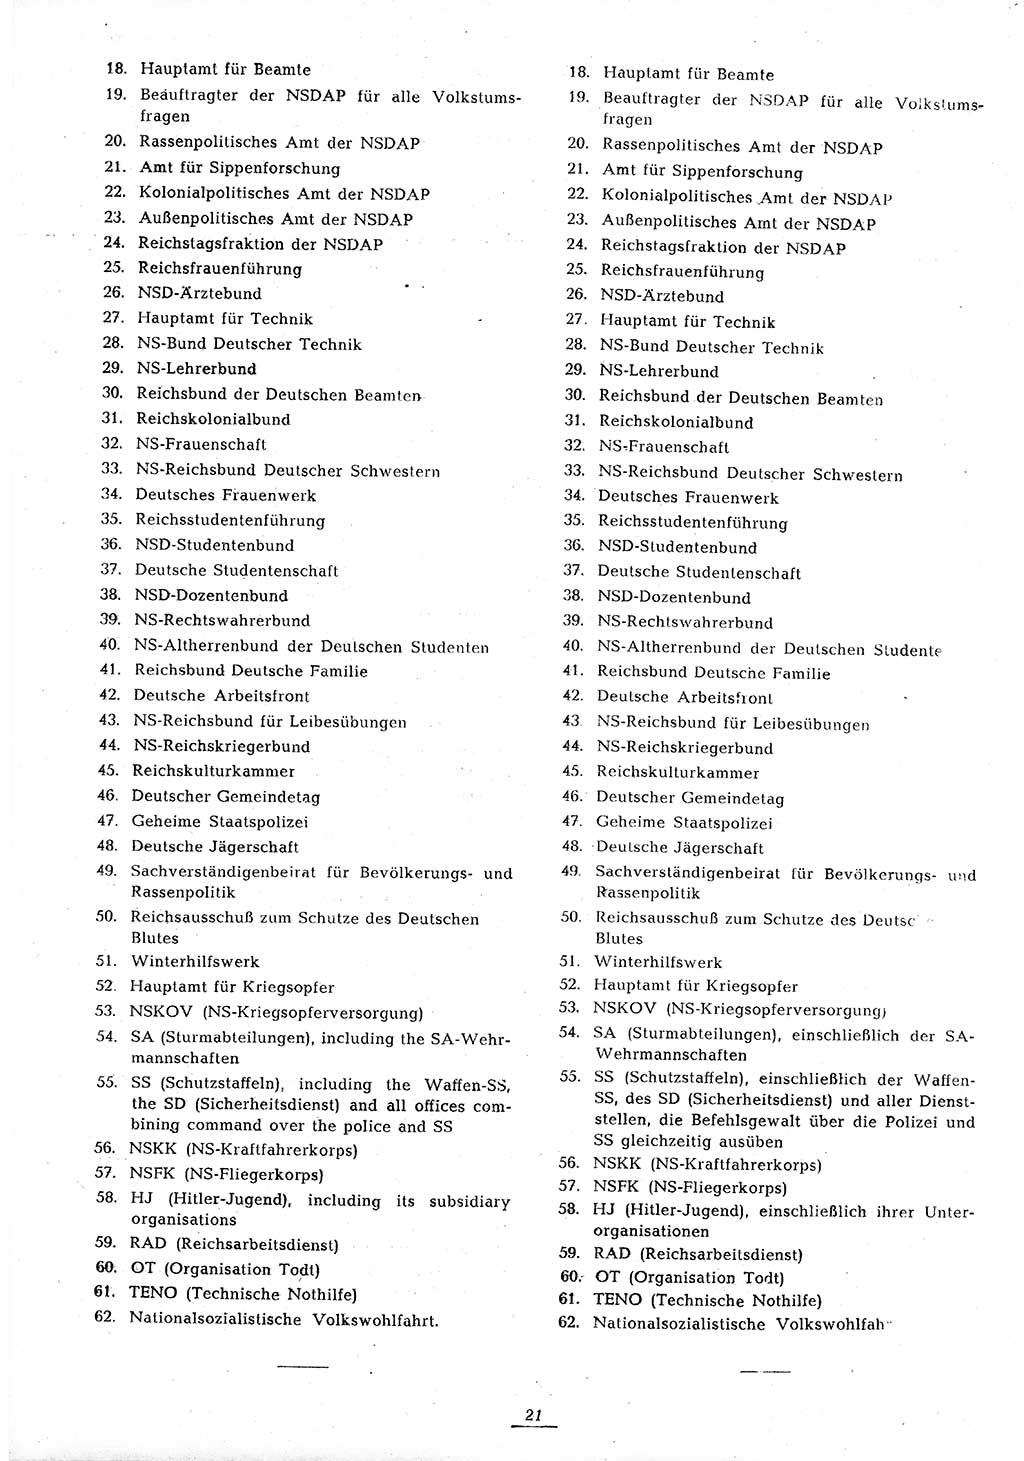 Amtsblatt des Kontrollrats (ABlKR) in Deutschland 1945, Seite 21/2 (ABlKR Dtl. 1945, S. 21/2)